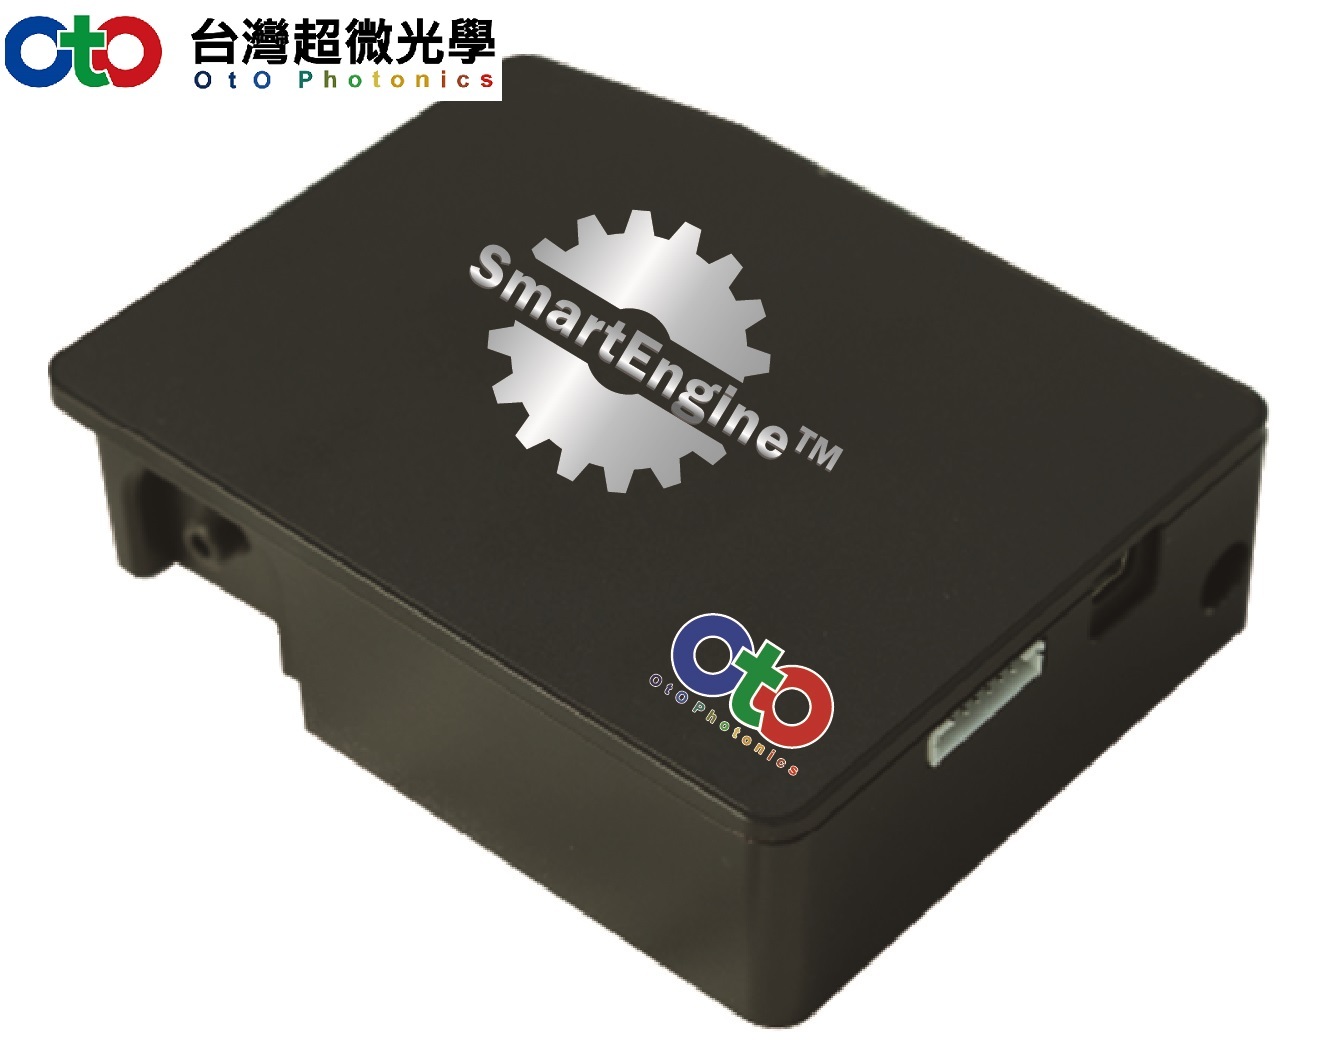 OtO 台湾超微光学 光纤光谱仪--智能引擎6号